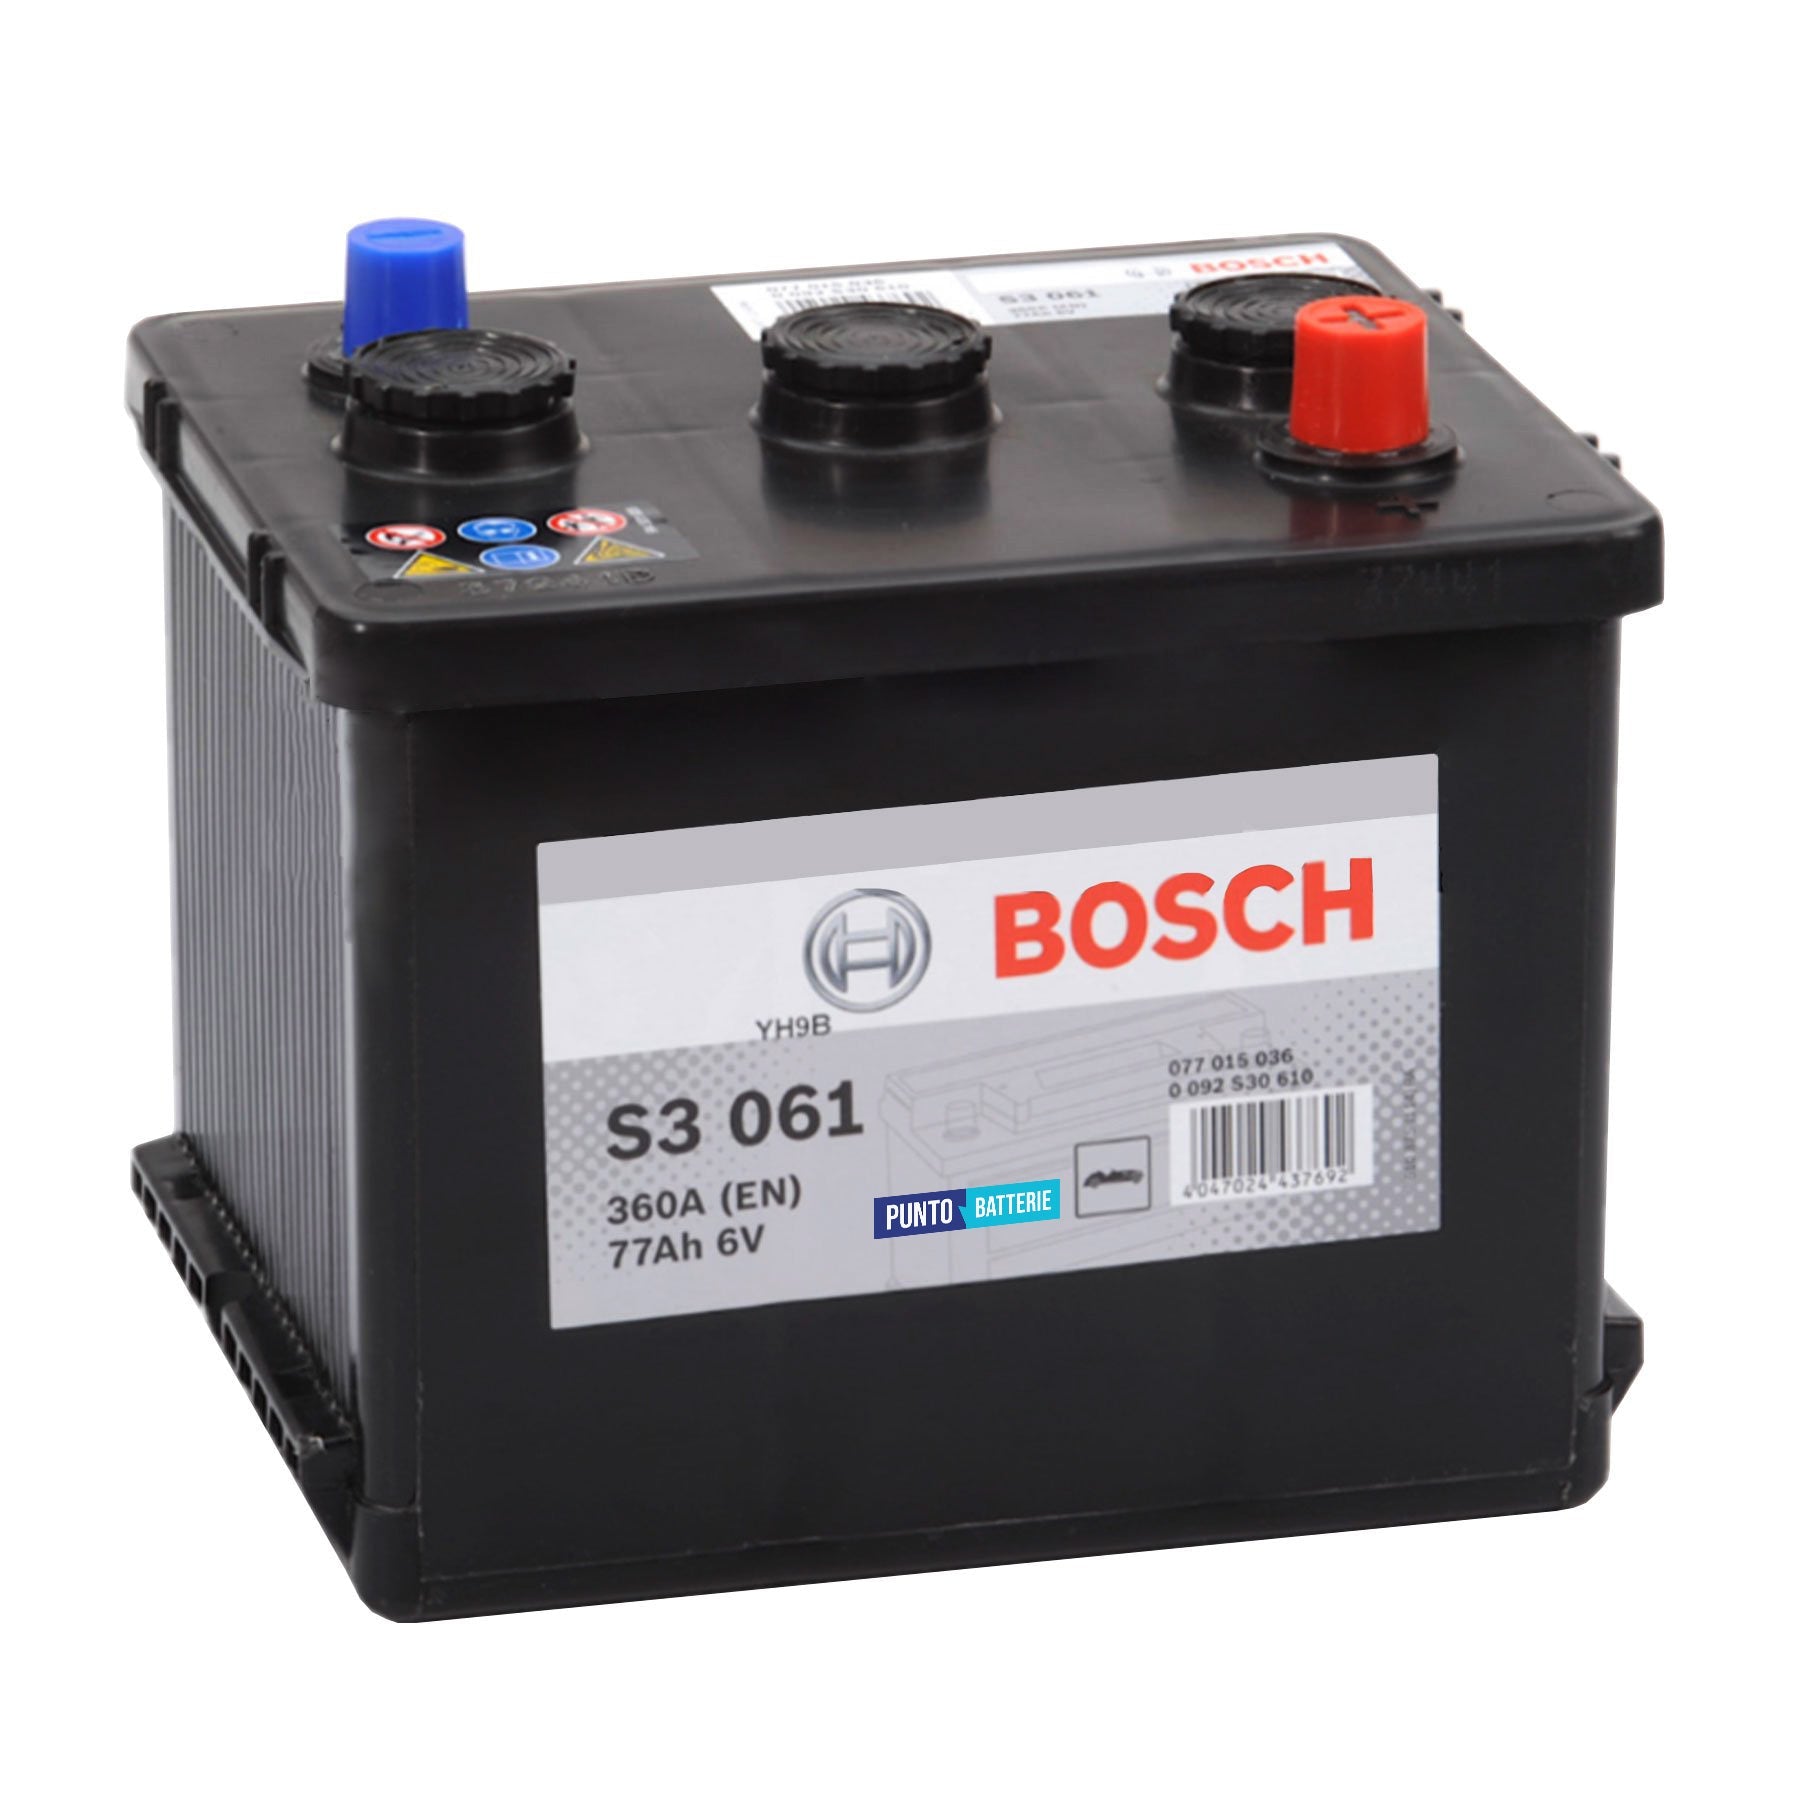 Batteria originale Bosch S3 S3 061, dimensioni 216 x 170 x 191, polo positivo a destra, 6 volt, 77 amperora, 360 ampere. Batteria per auto e veicoli leggeri.